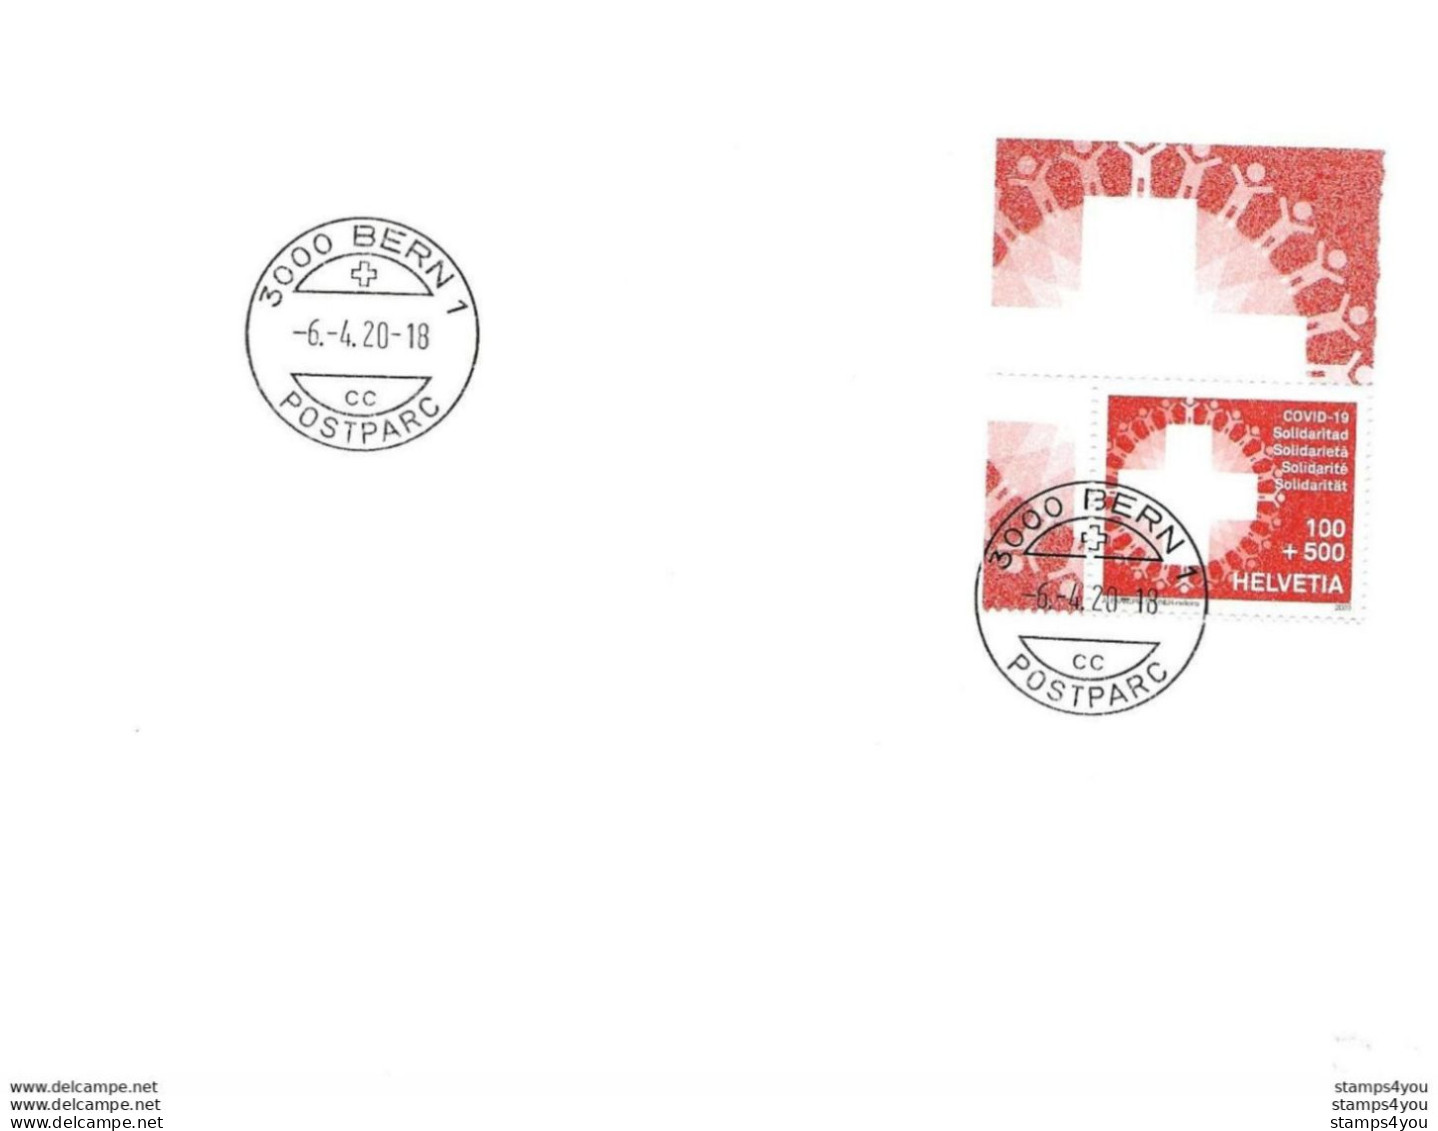 433 - 49 - Enveloppe Avec Timbre "Covid" Cachet à Date Bern 6.4.20. - Date 1er Jour Du Timbre - Briefe U. Dokumente